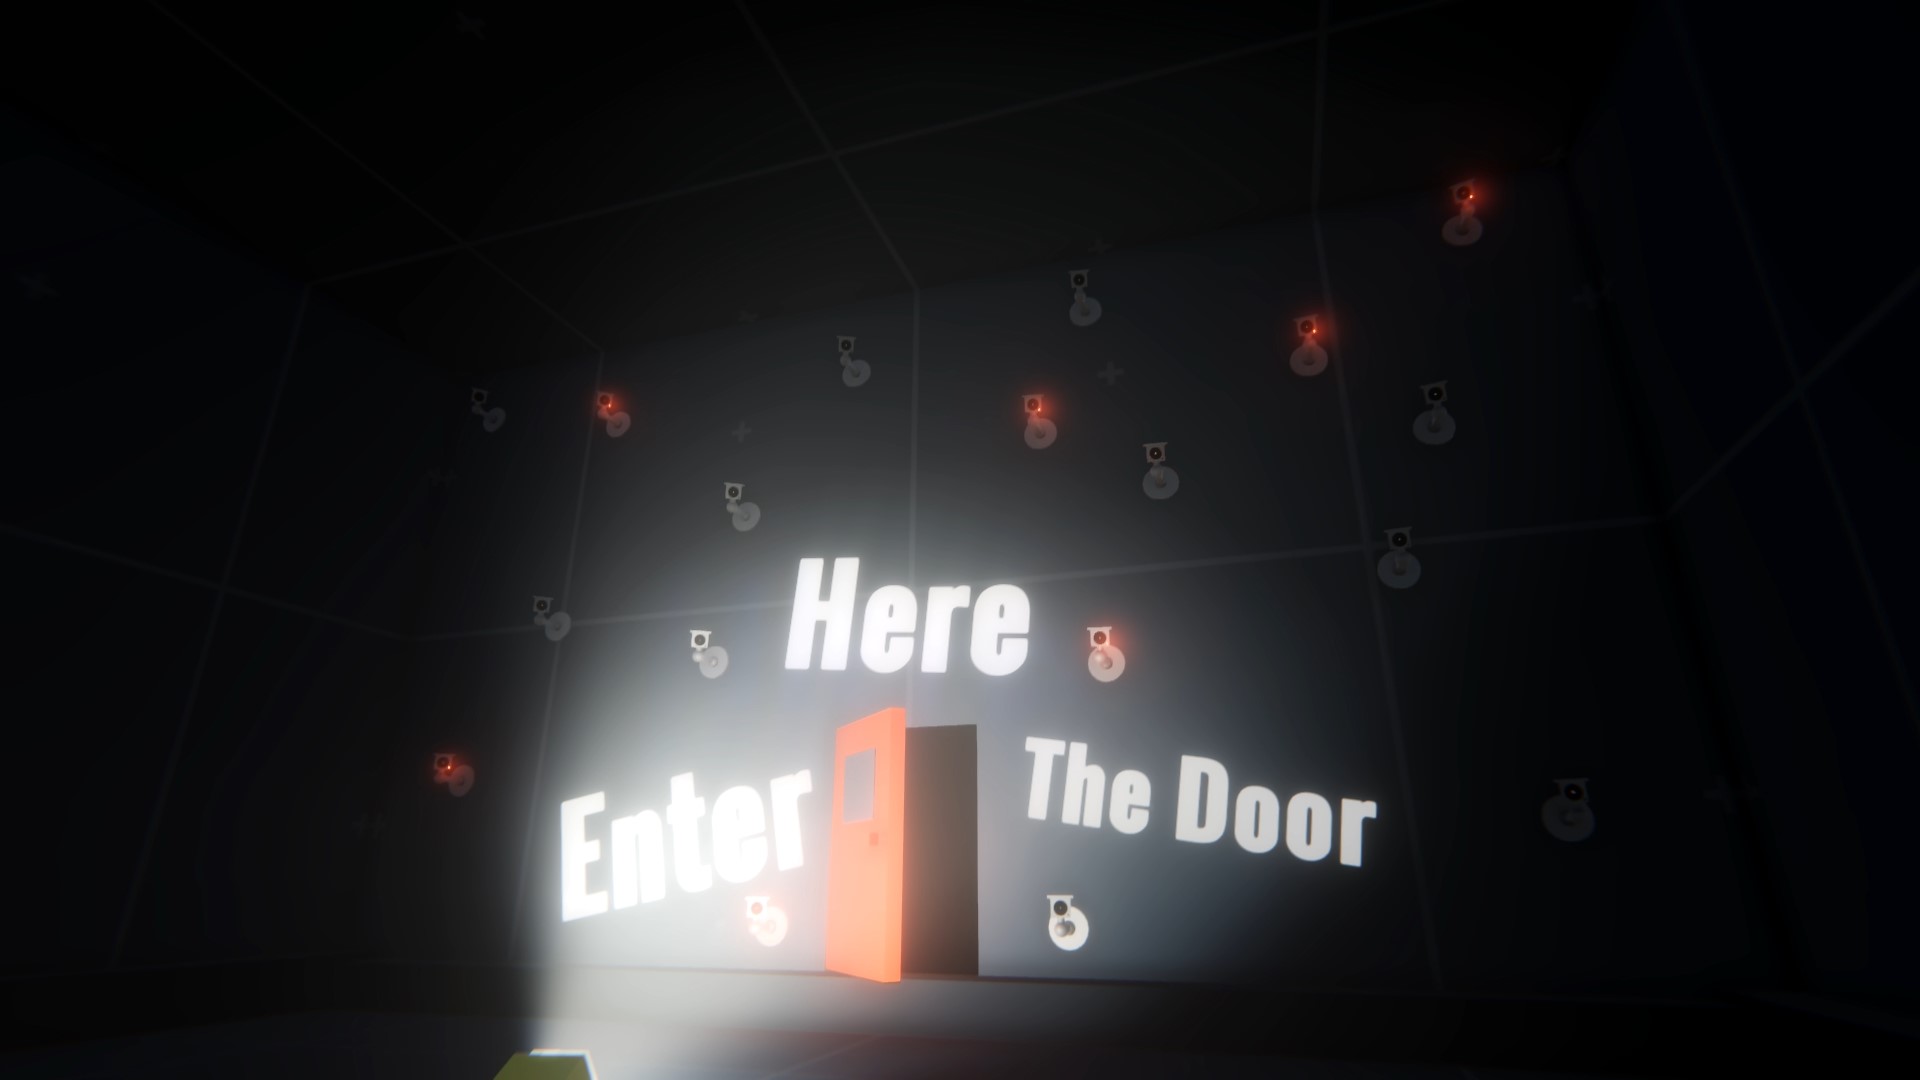 Enter the Door